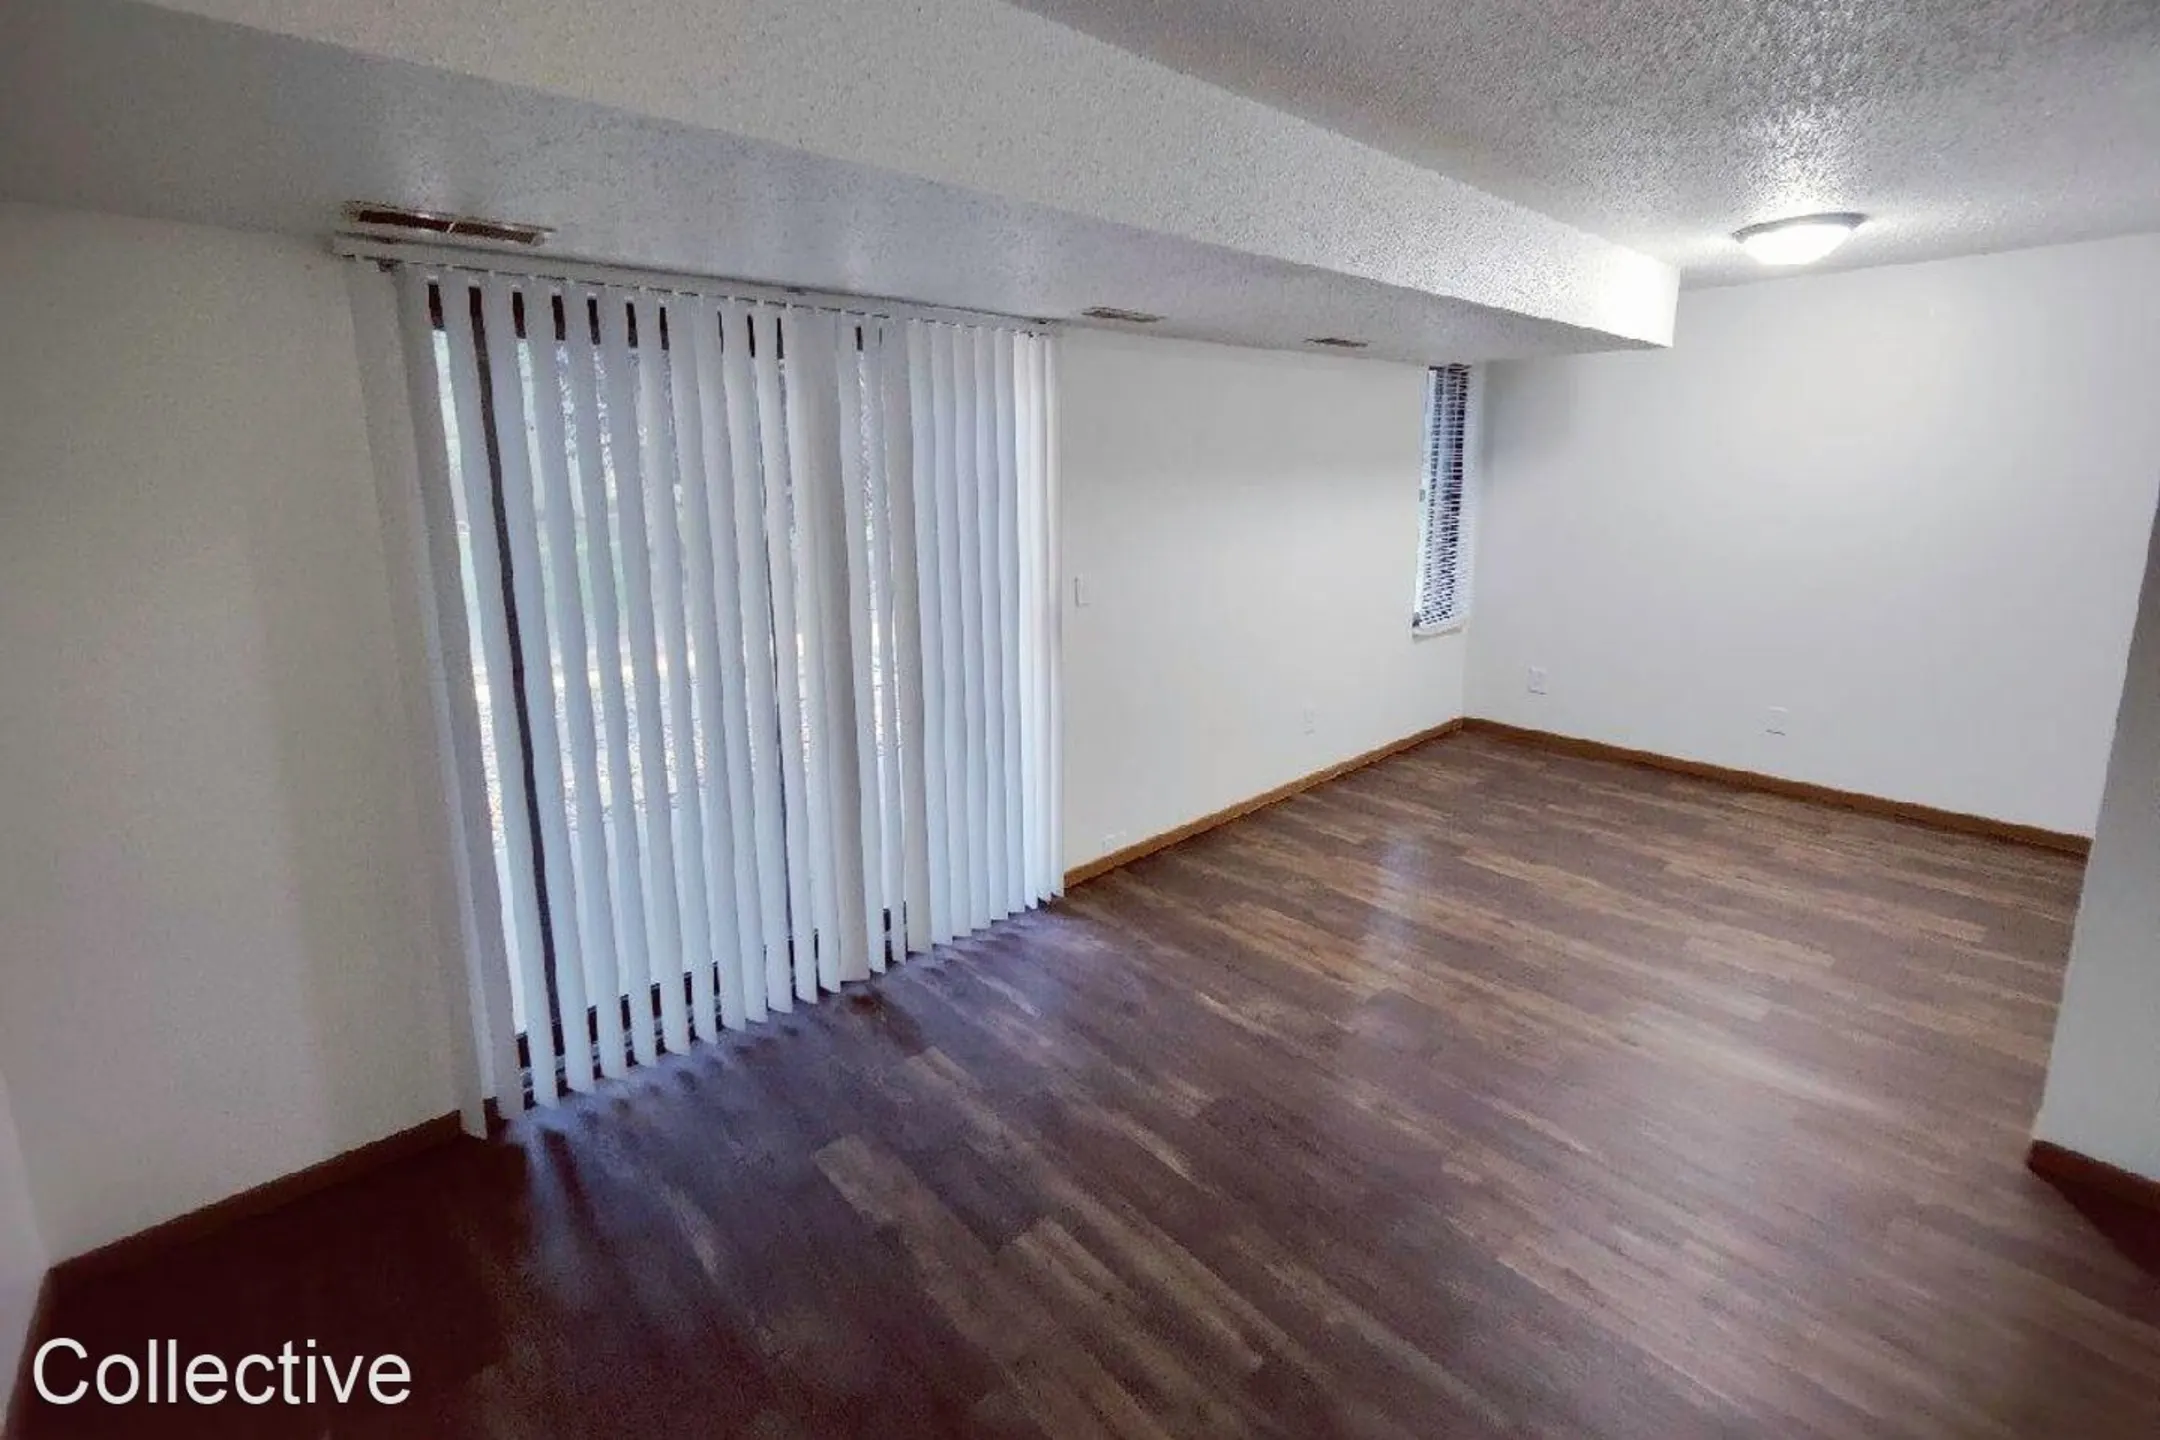 Living Room - Kirkwood Park Apartments - Bismarck, ND